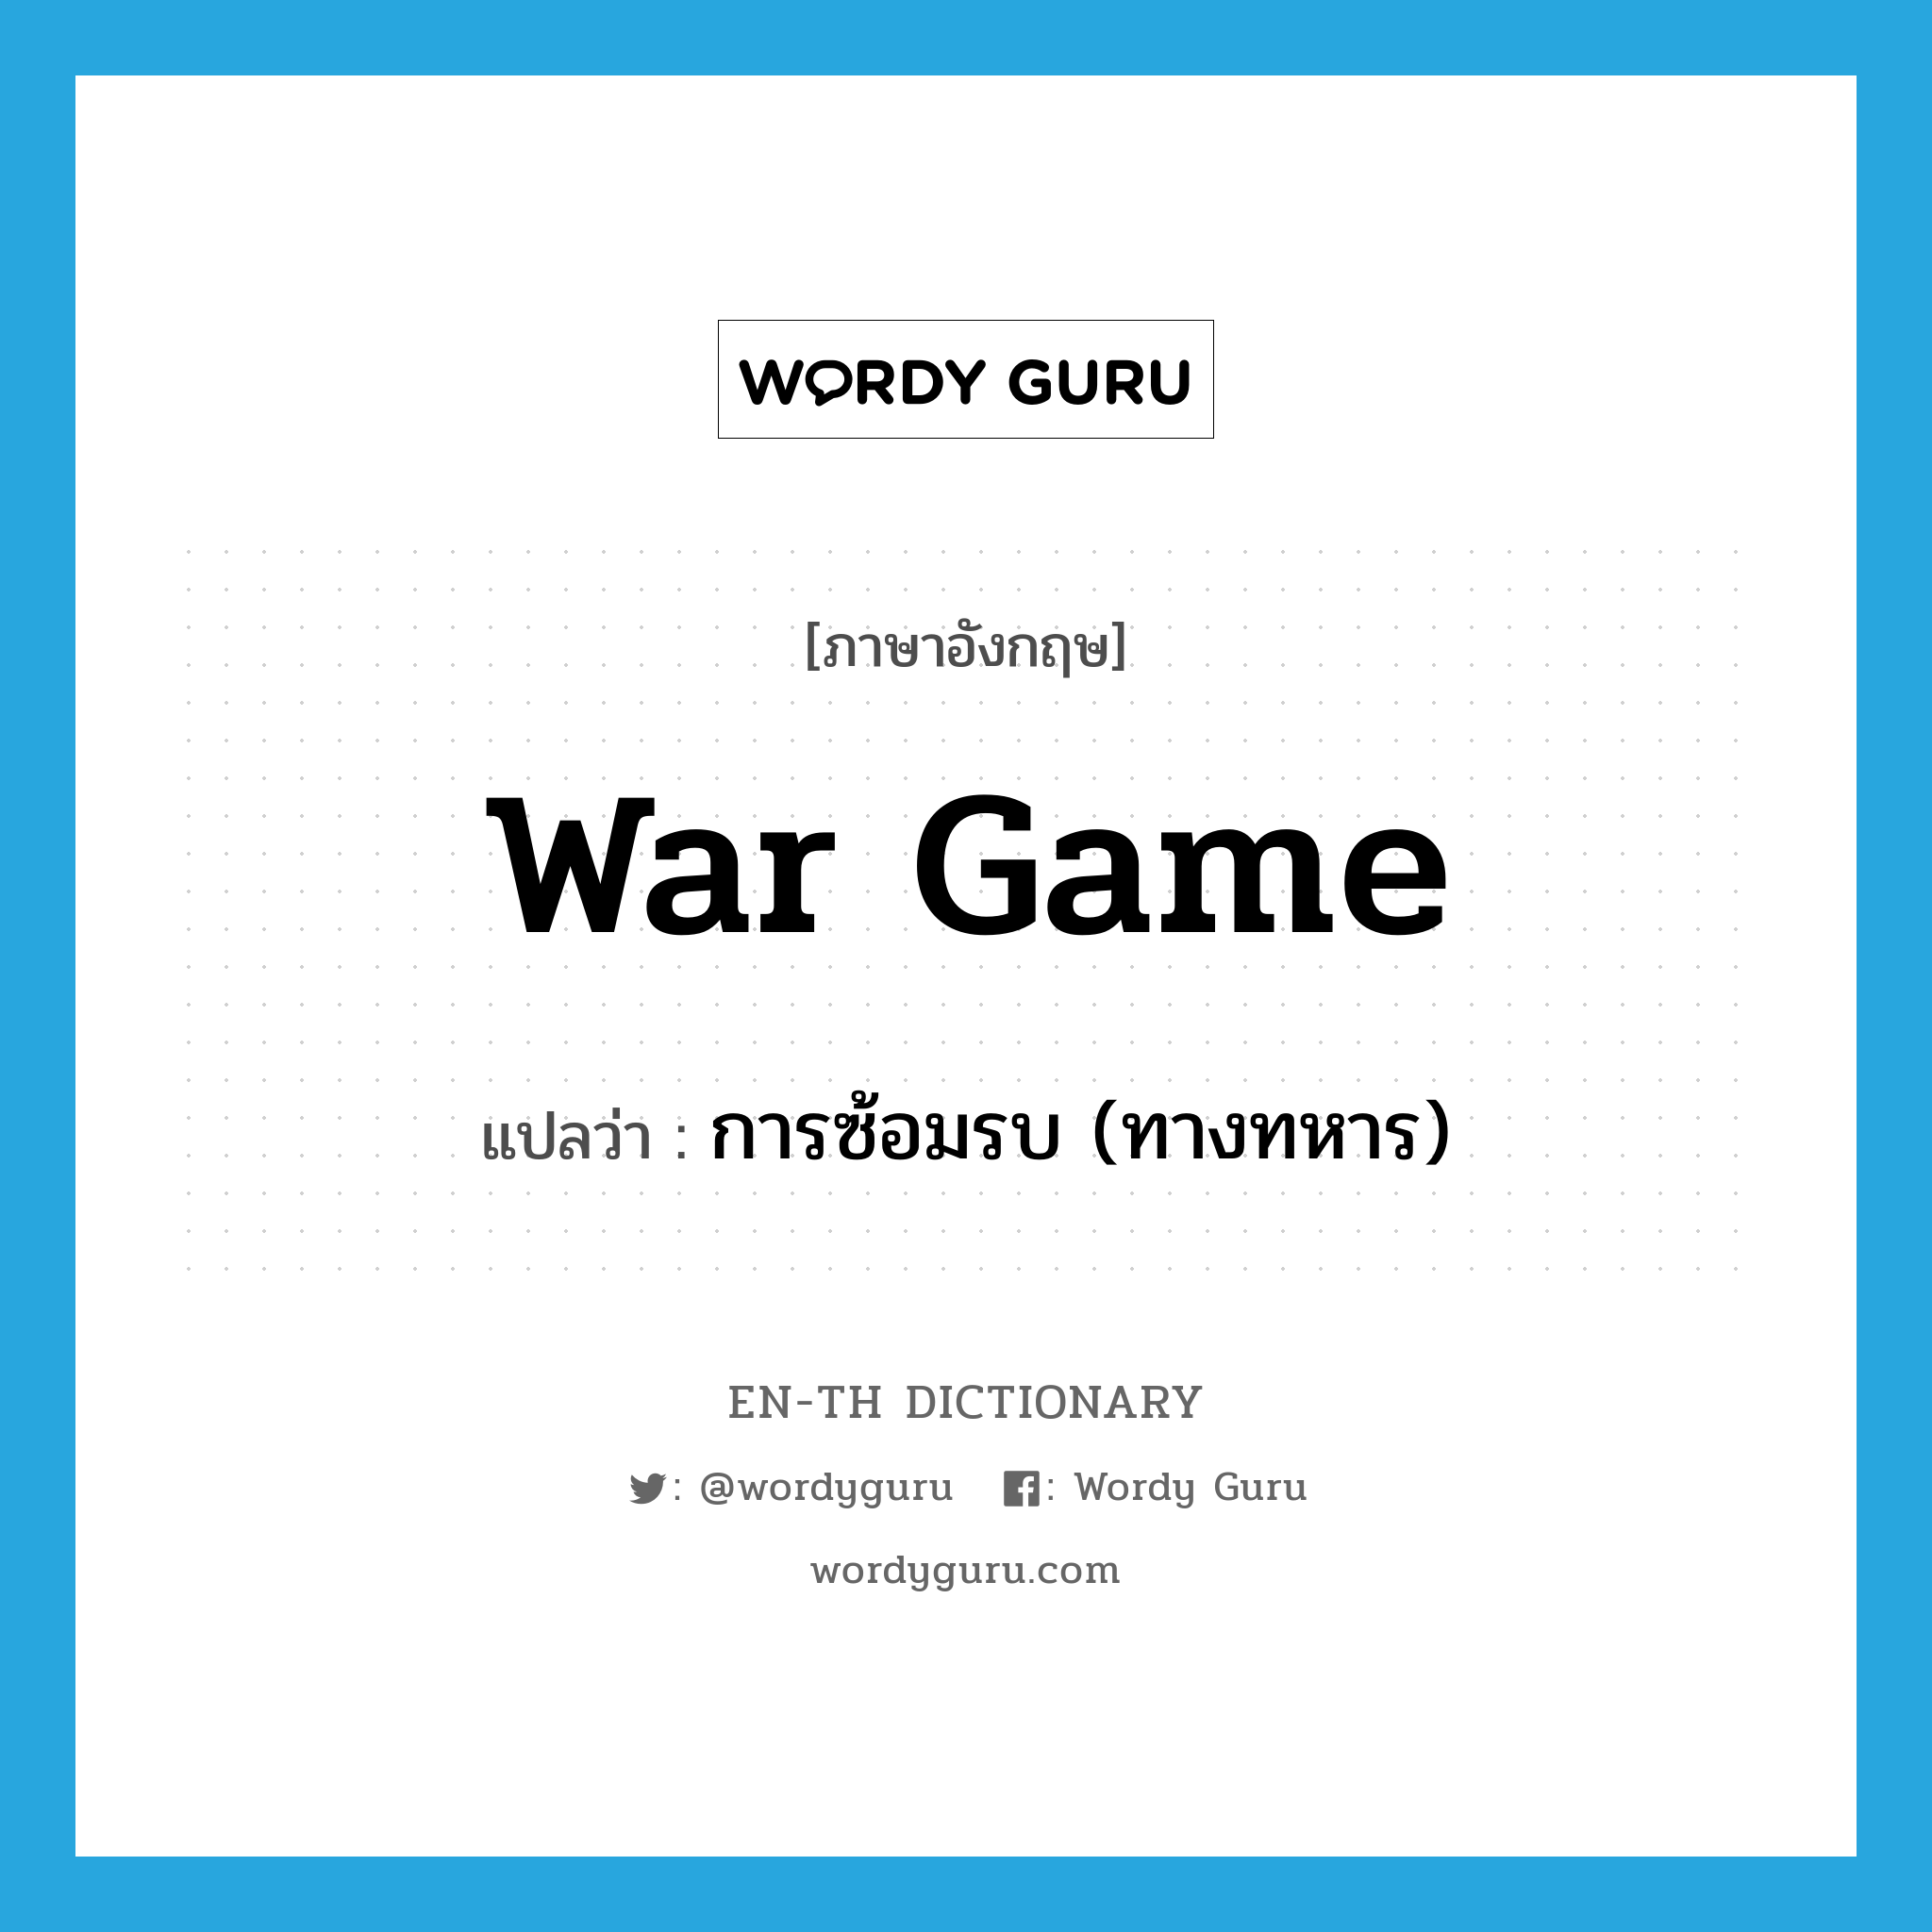 การซ้อมรบ (ทางทหาร) ภาษาอังกฤษ?, คำศัพท์ภาษาอังกฤษ การซ้อมรบ (ทางทหาร) แปลว่า war game ประเภท N หมวด N